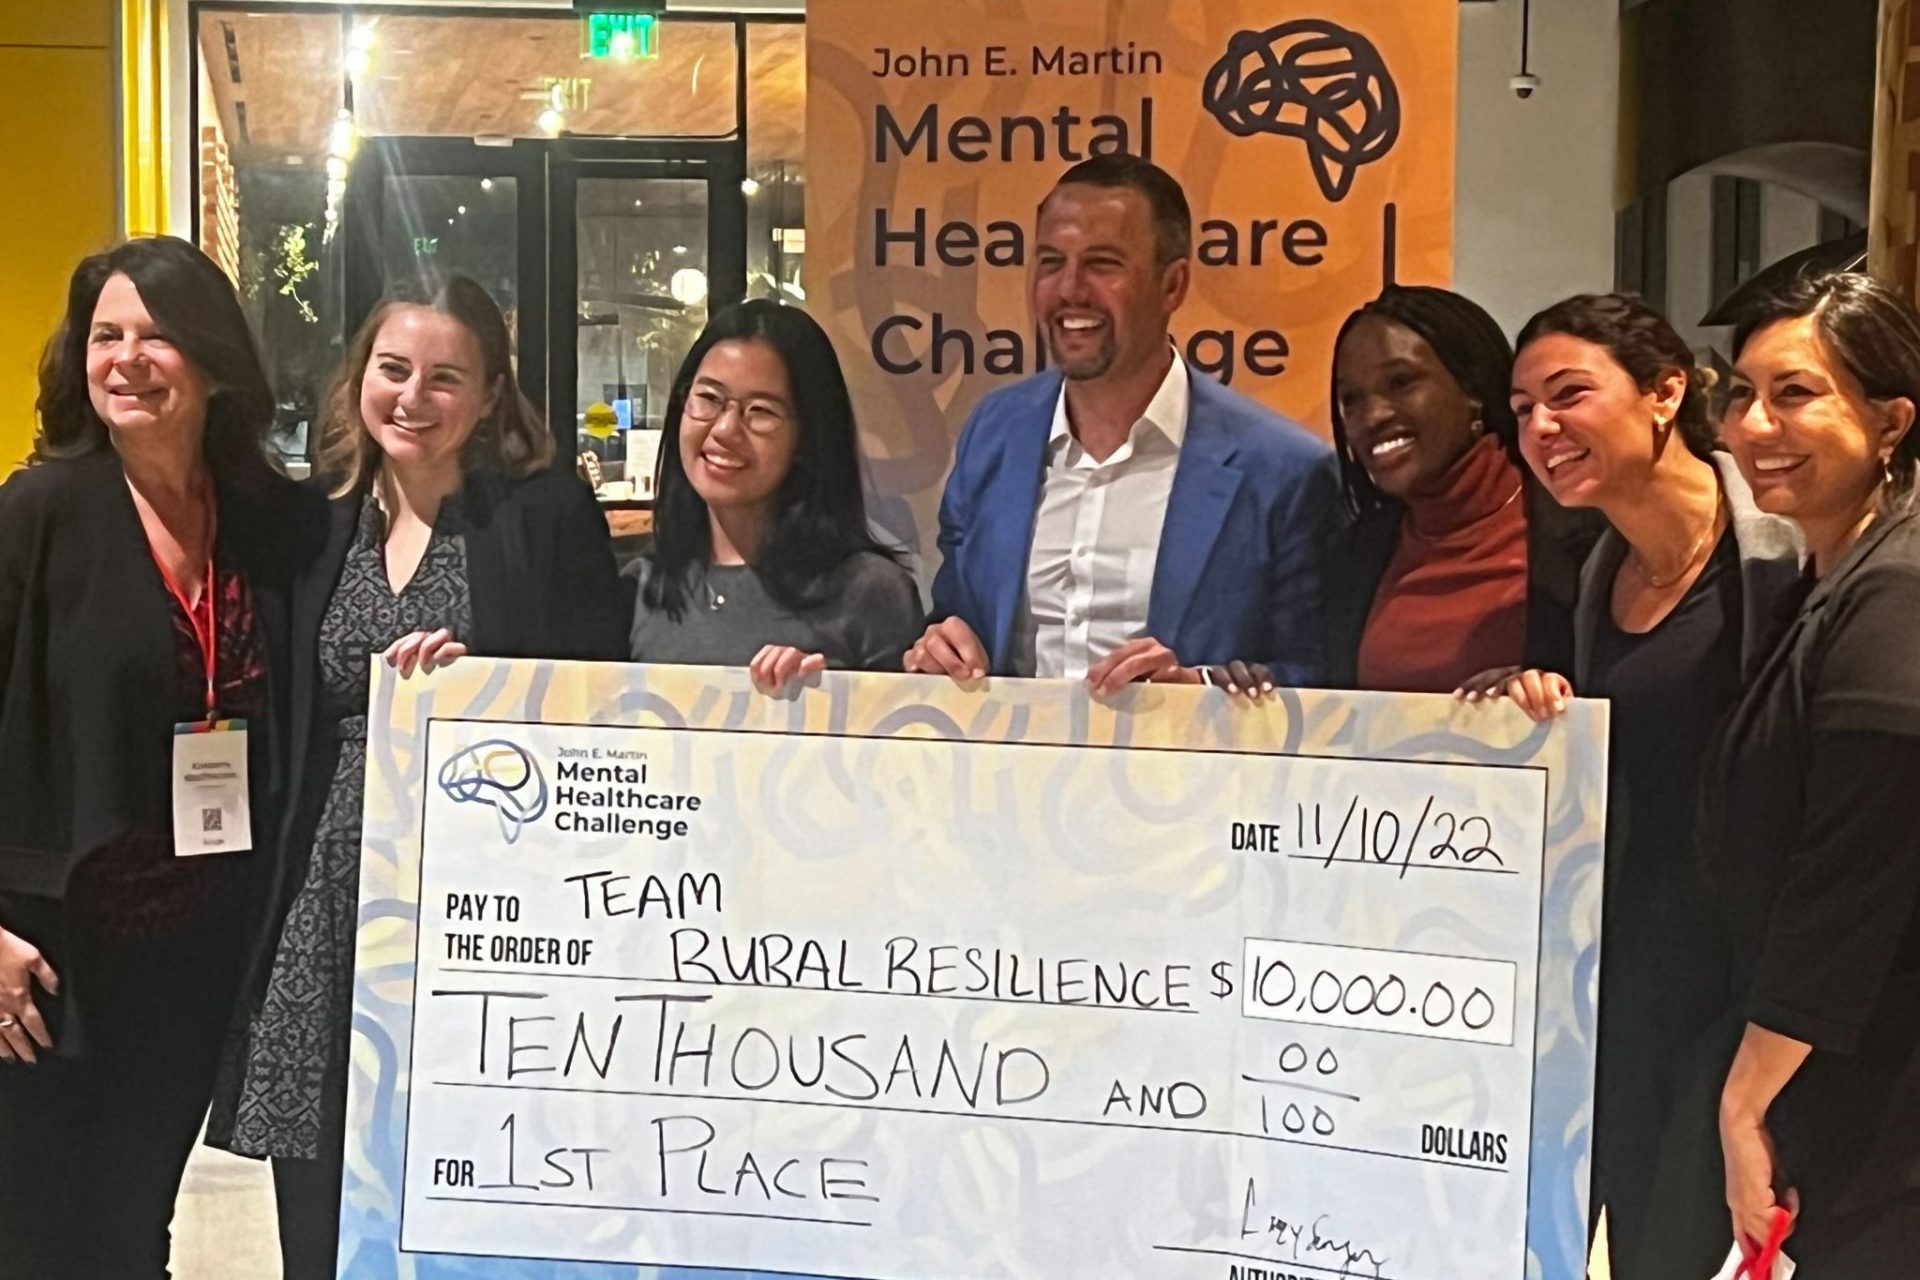 John E Martin Mental Healthcare Challenge winning team